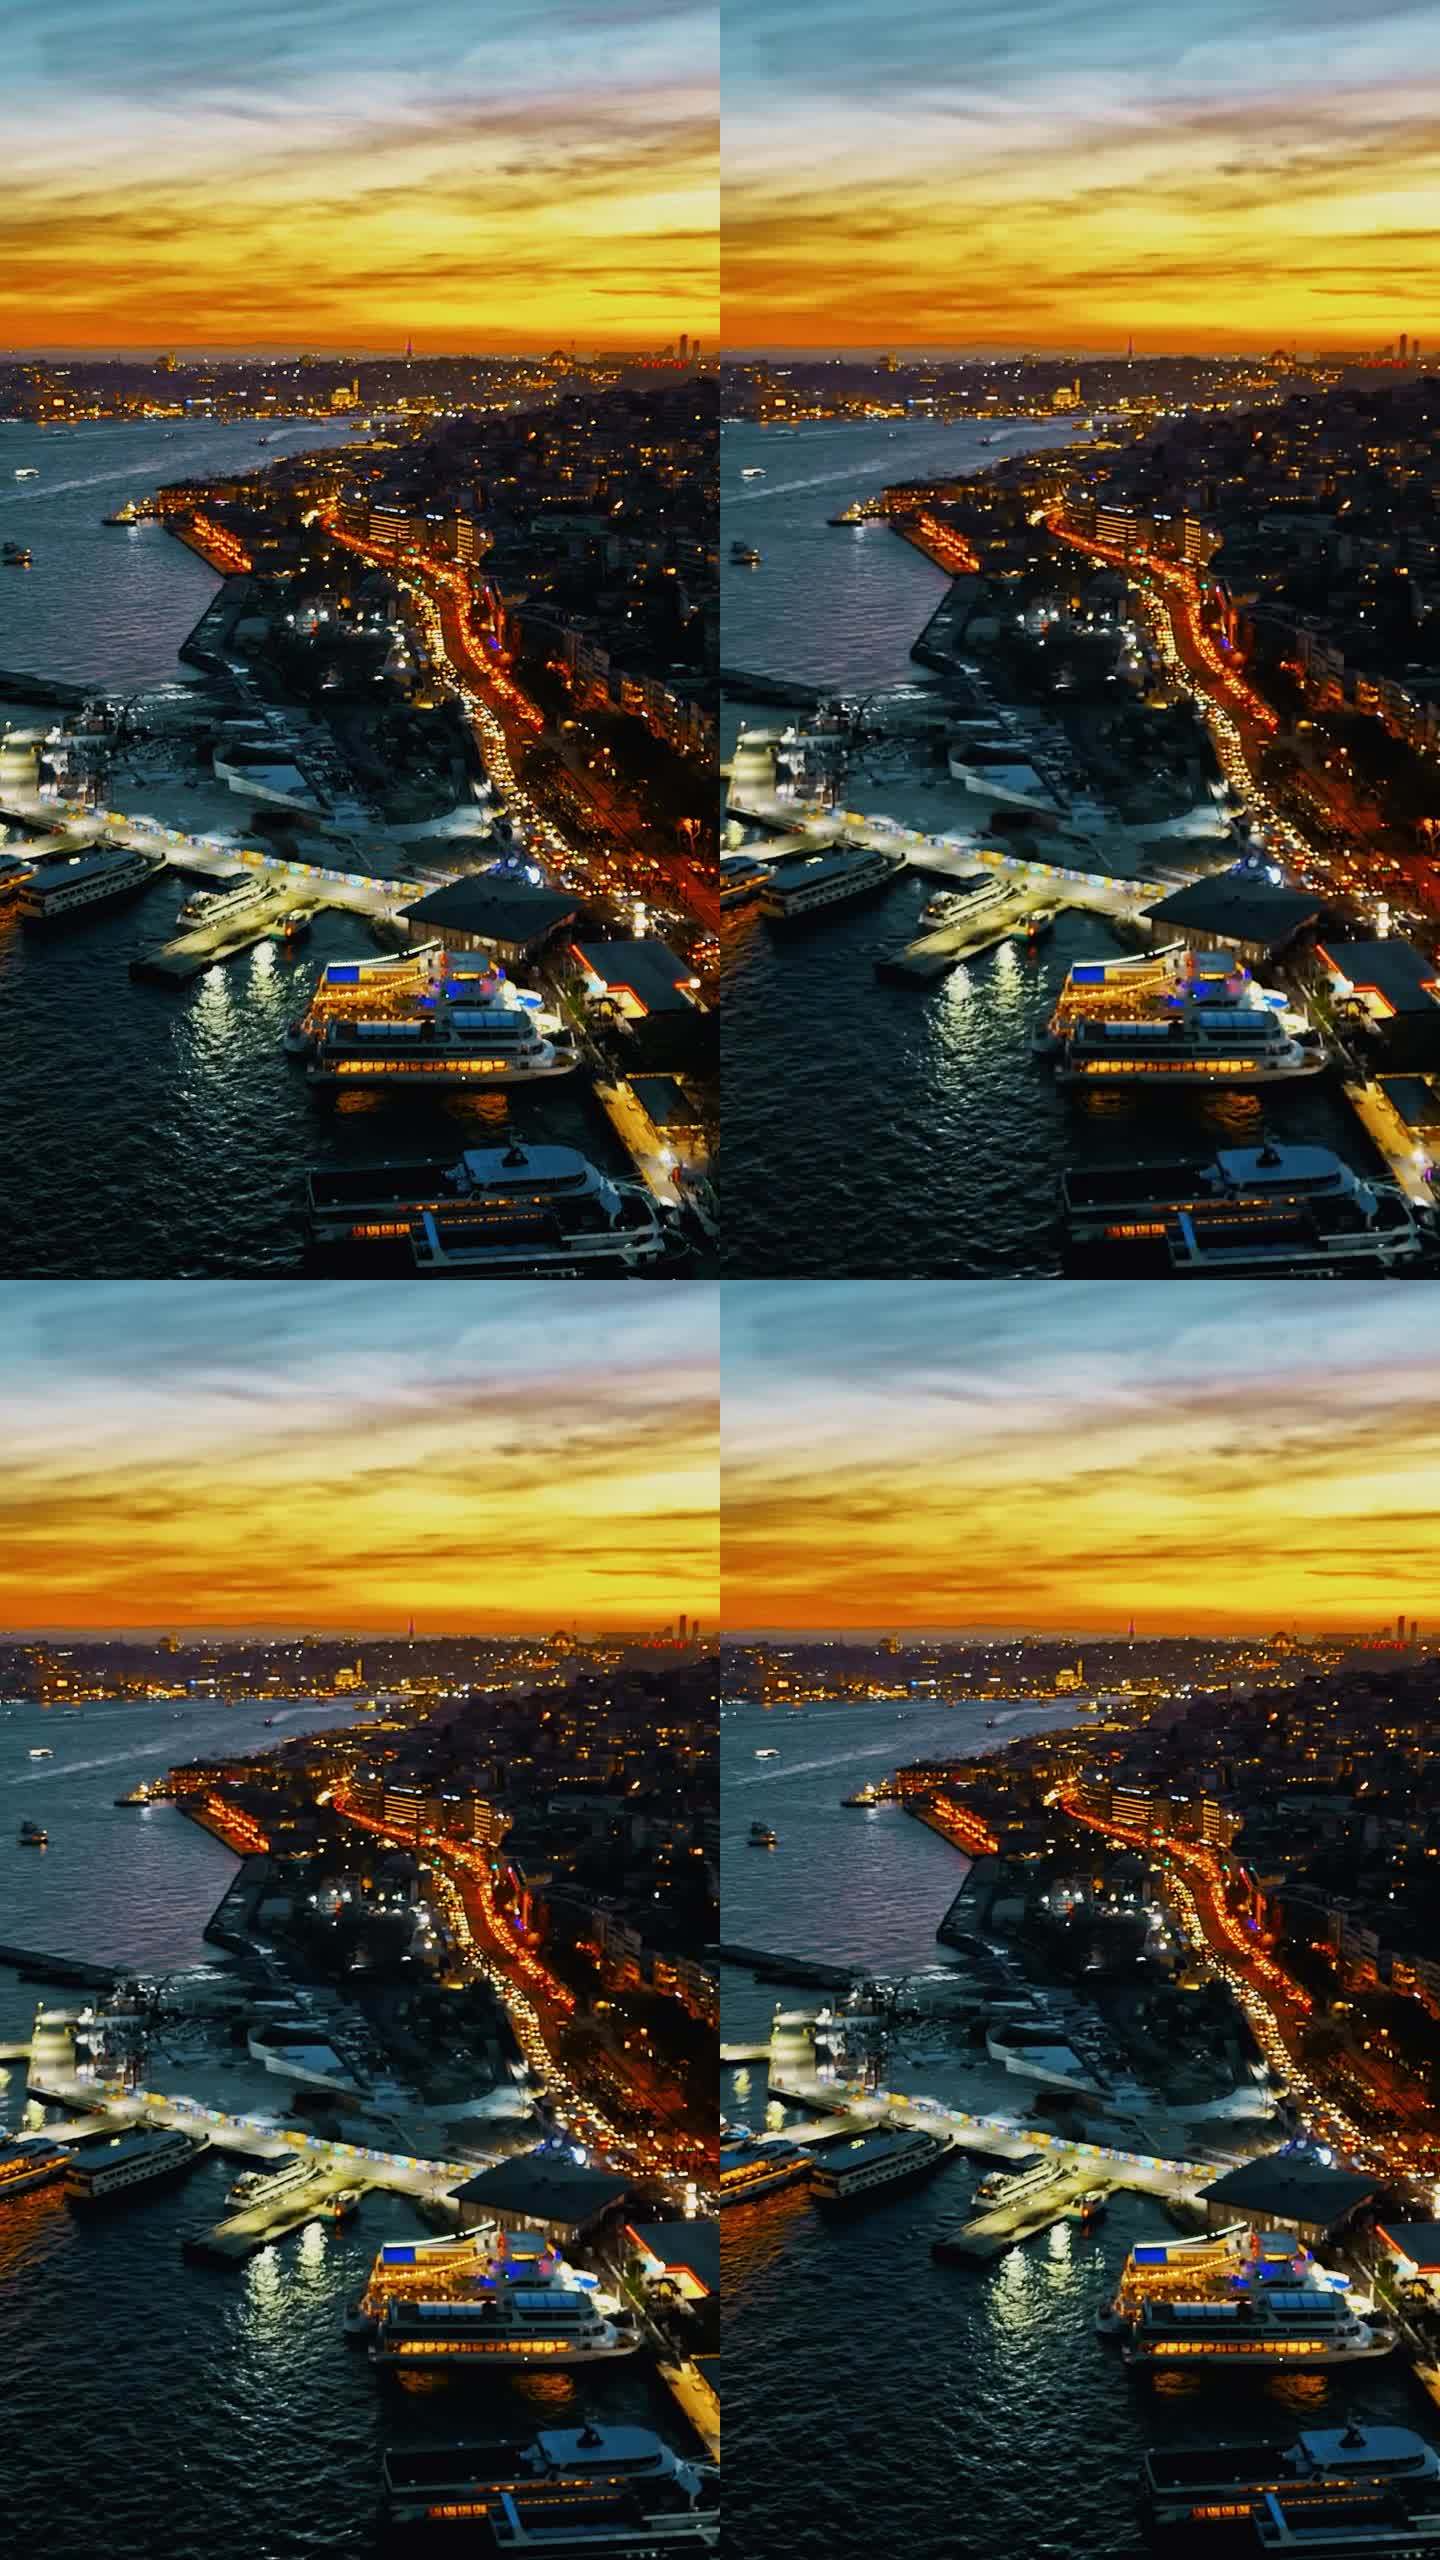 黄昏时分博斯普鲁斯海峡上空充满活力的云景:从上面探索伊斯坦布尔海岸线上隐藏的宝石#无人机发现#城市黄